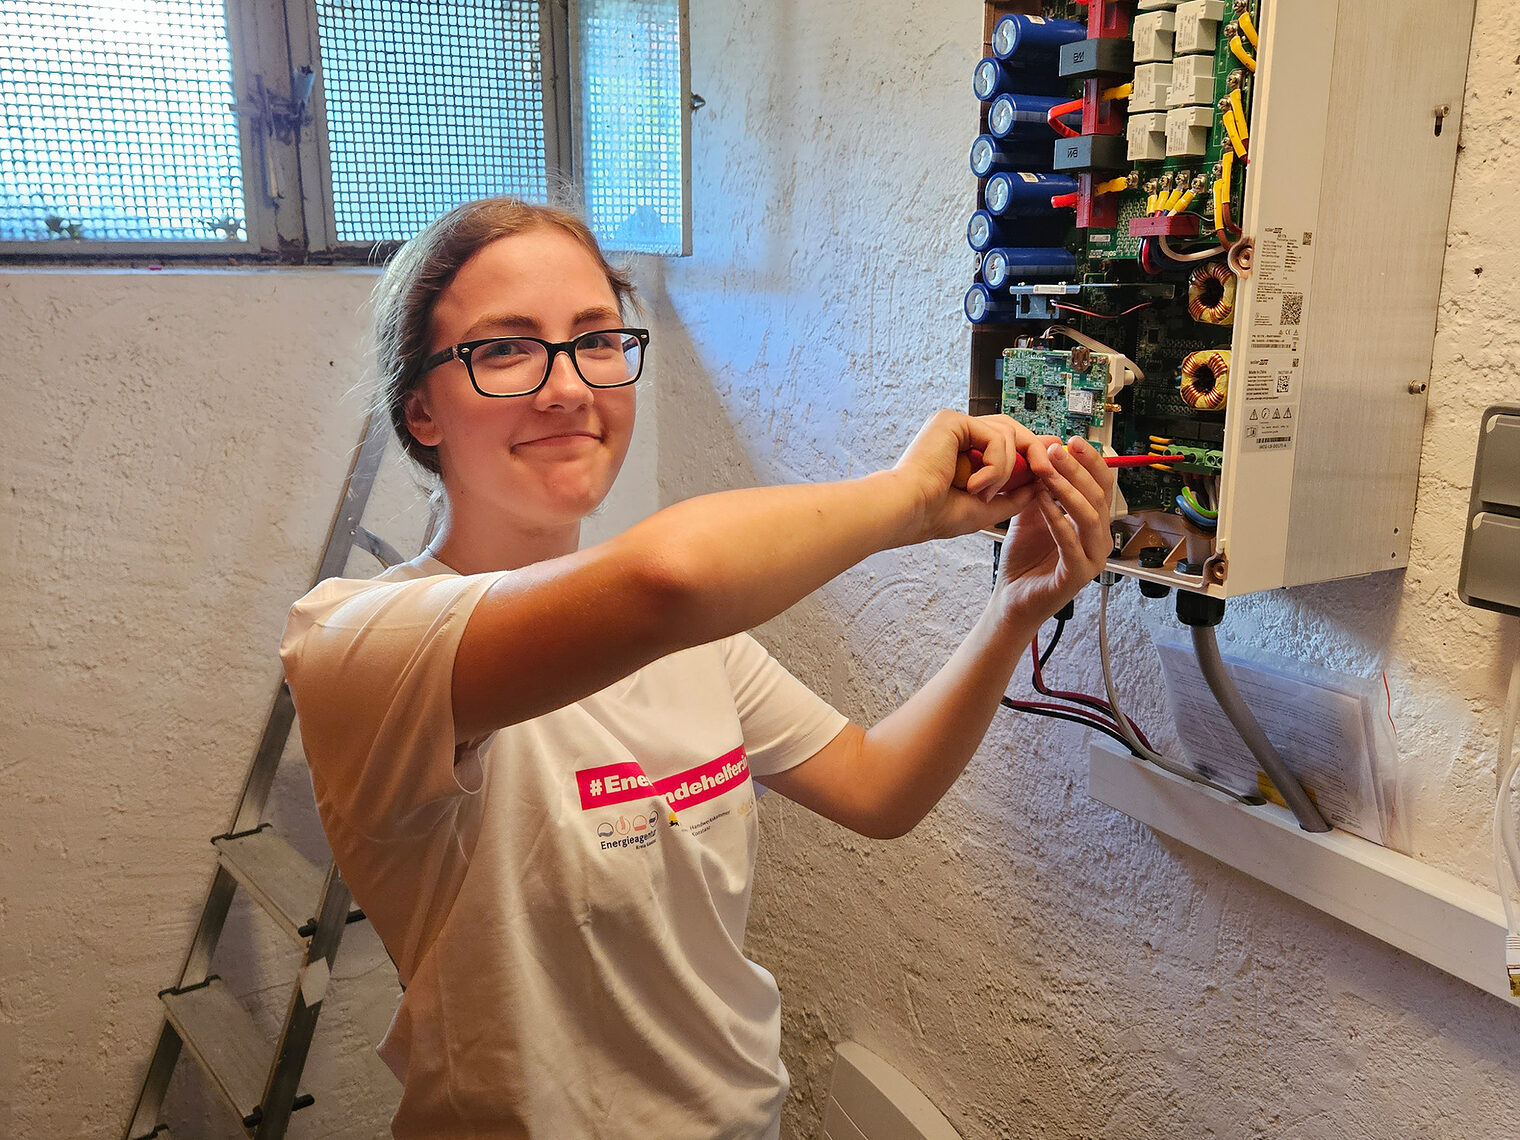 Energiewendehelferin Rosalie Rieger bei der Arbeit am Stromkasten in einem Keller.